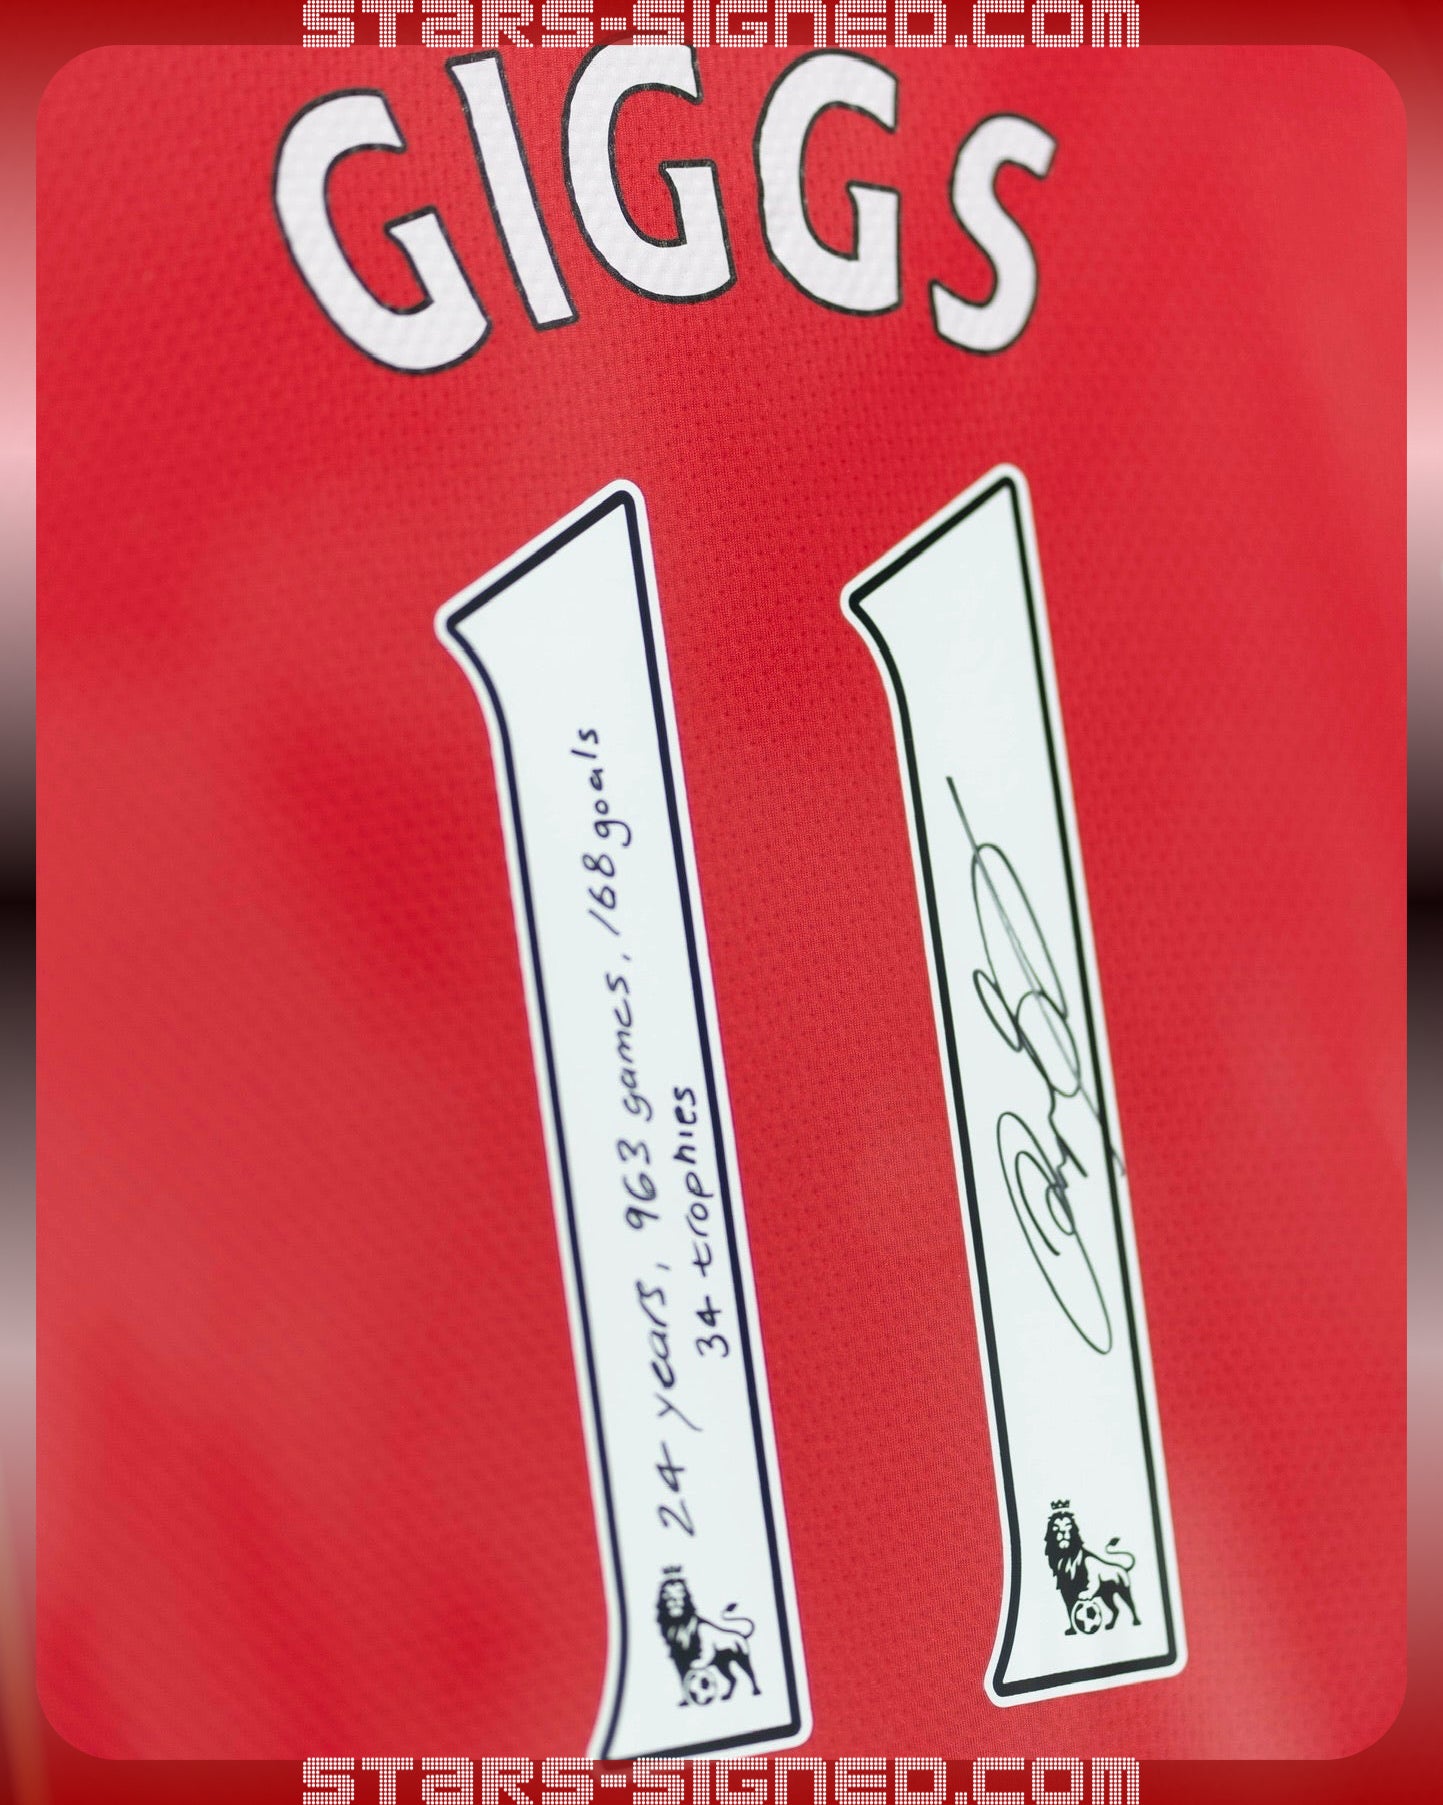 傑斯 Ryan Giggs 題寫【生涯數據】“24 years, 963 games, 168 goals, 34 trophies” 曼聯 主場球衣裱框 (背簽)